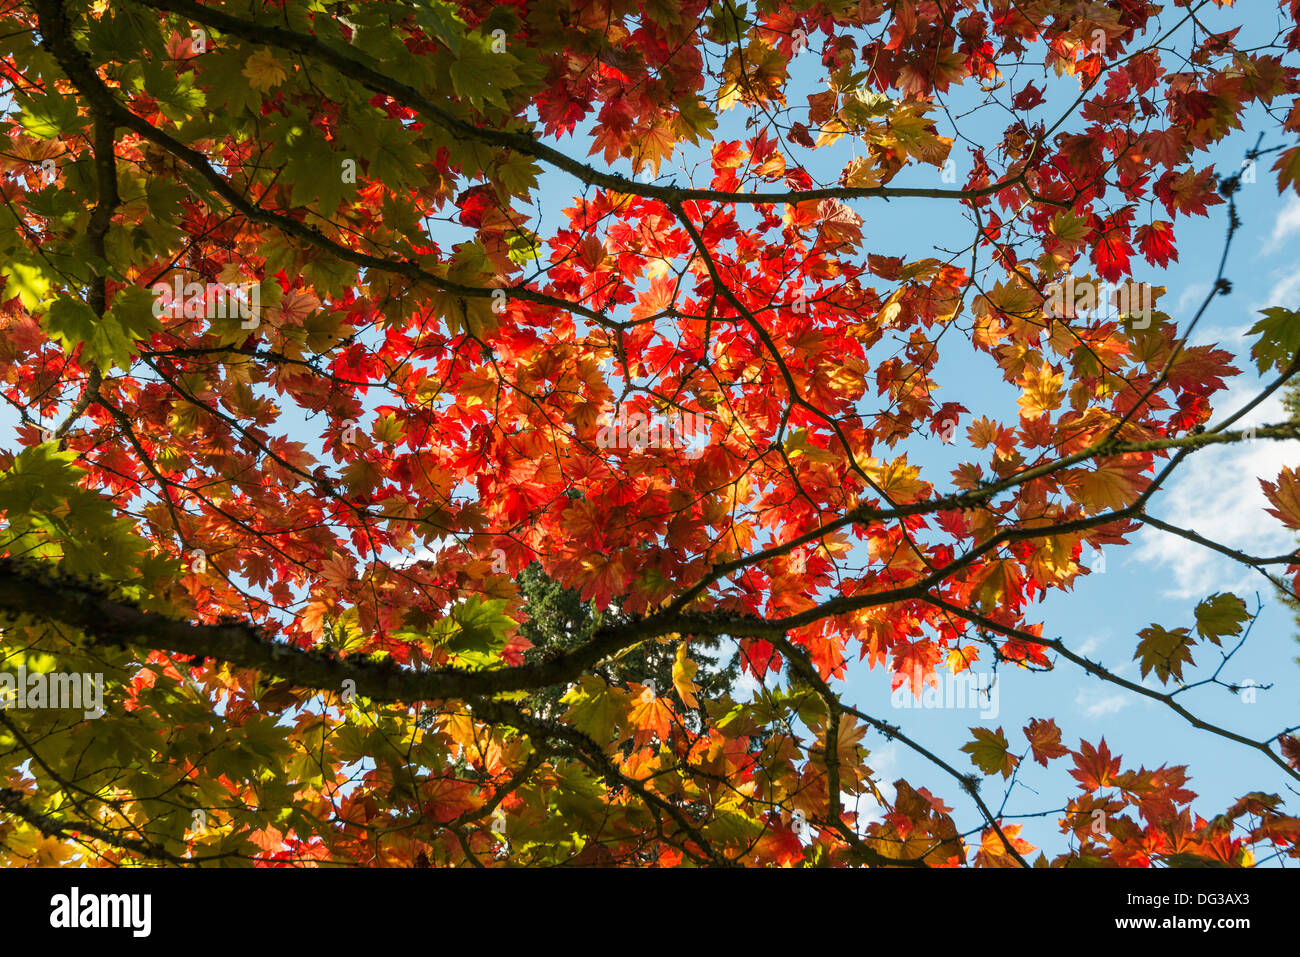 Acer-Baum in Herbstfarben in National Arboretum, Westonbirt nr Tetbury Glos. Engalnd UK. von der Forestry Commission verwaltet. Stockfoto